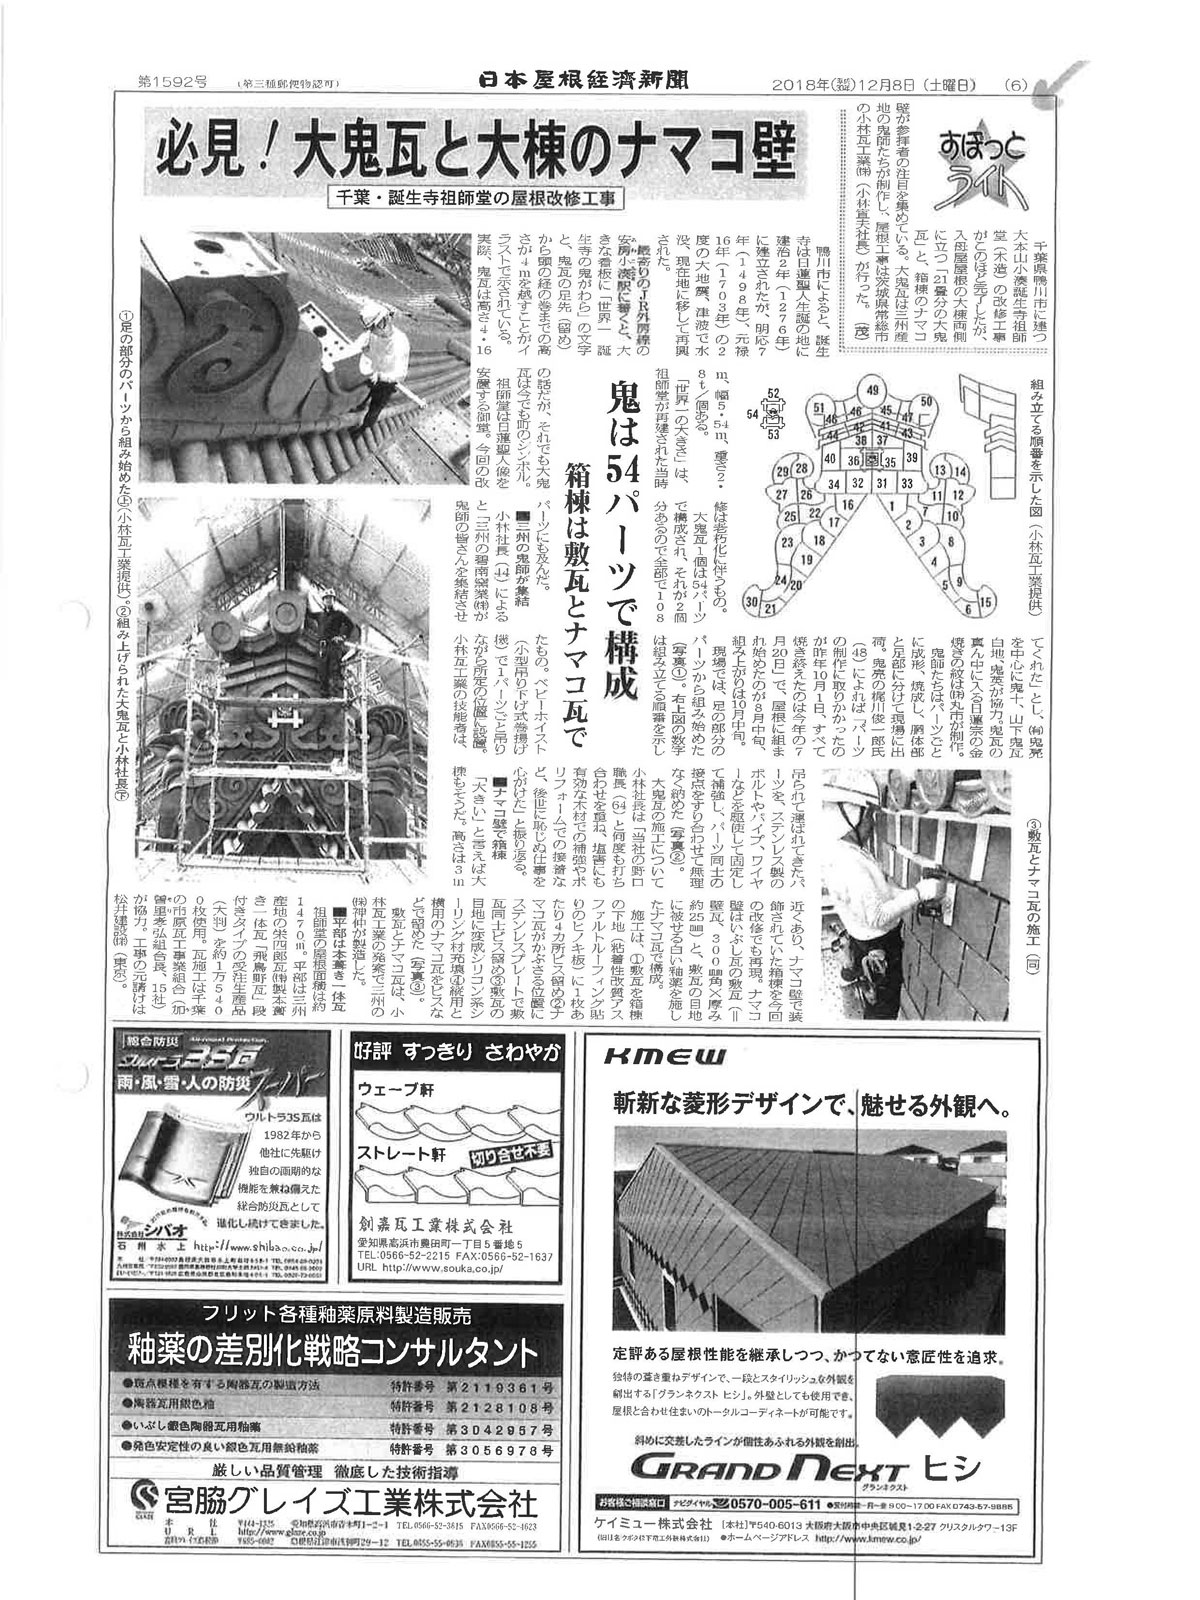 日本屋根経済新聞の切り抜き